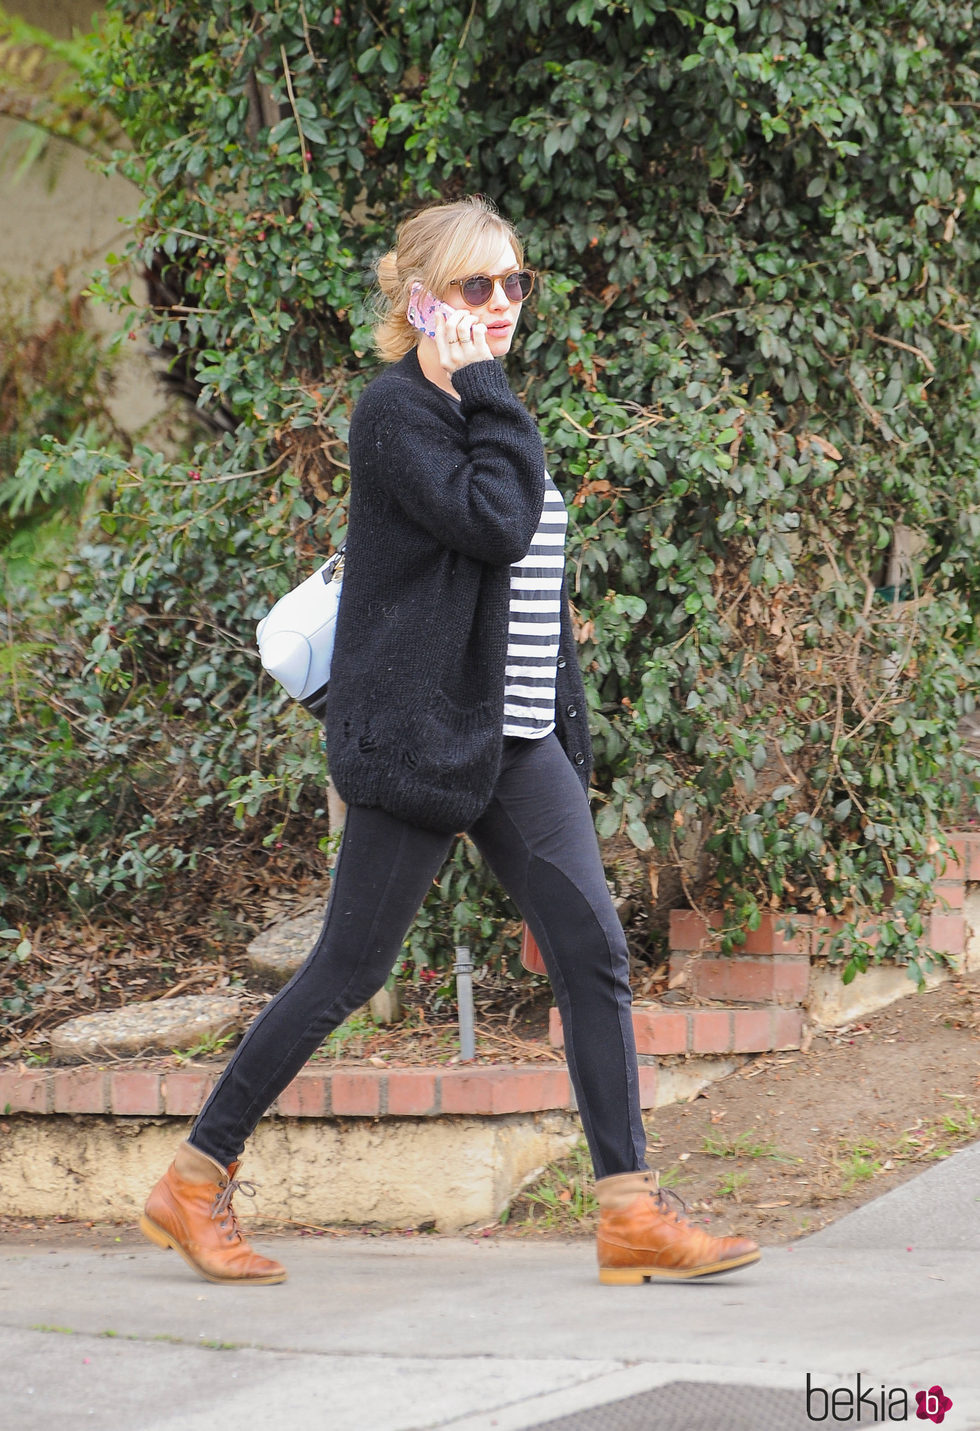 Amanda Seyfried, embarazada de paseo por Los Angeles